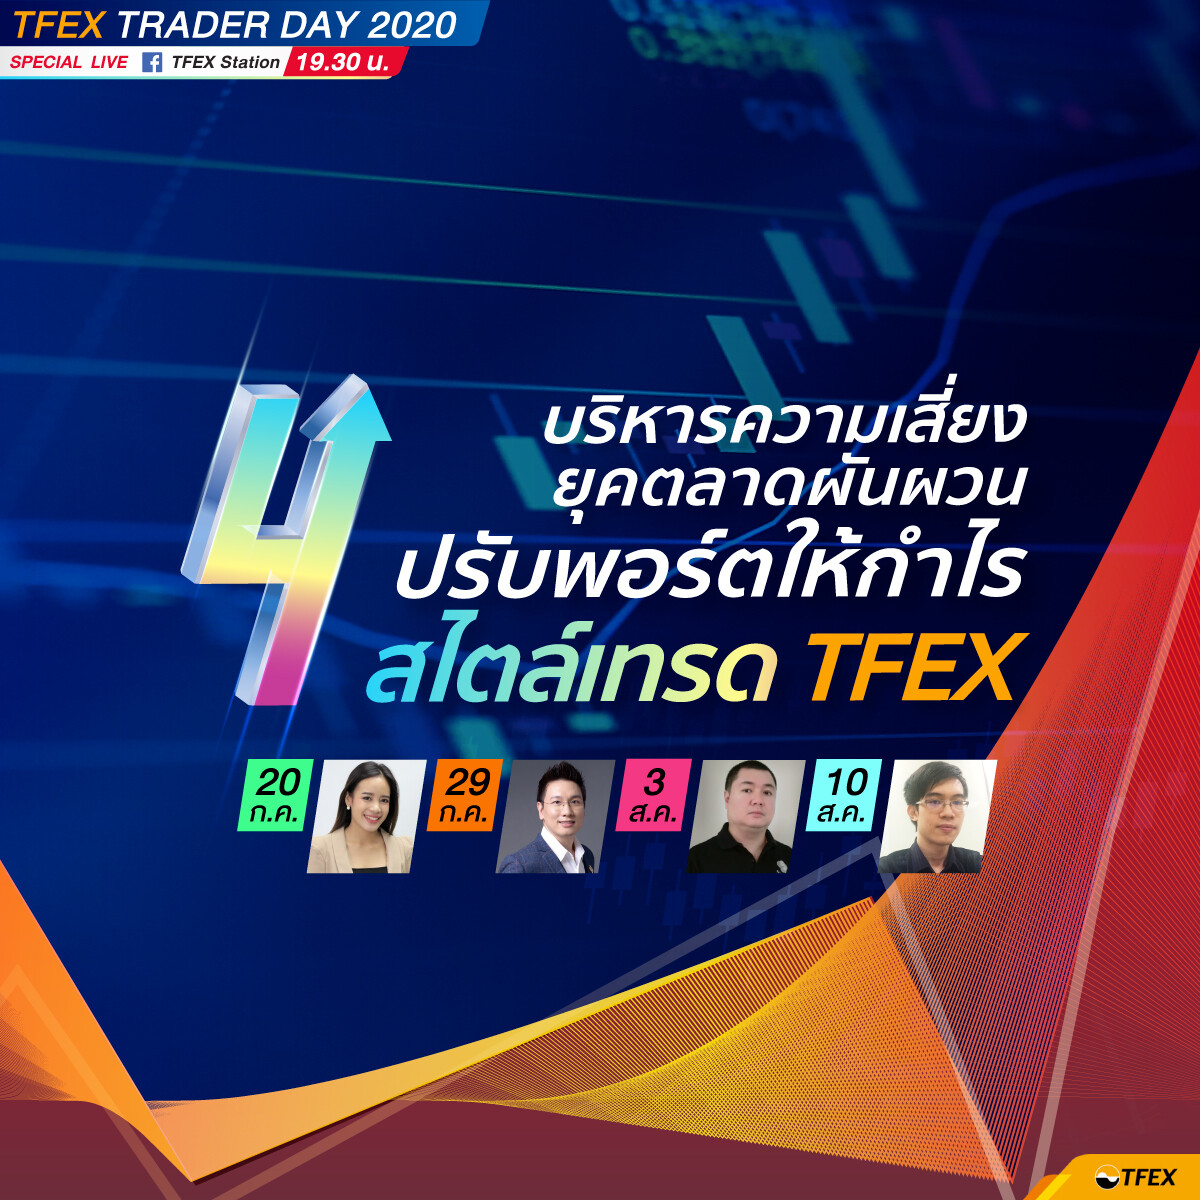 บมจ. ตลาดสัญญาซื้อขายล่วงหน้า (ประเทศไทย) ขอนำส่งข่าวสั้น “ยุคตลาดผันผวน ไม่ตกขบวนทำกำไร หาคำตอบใน TFEX Trader Day LIVE Special 4 วัน 4 หัวข้อ”